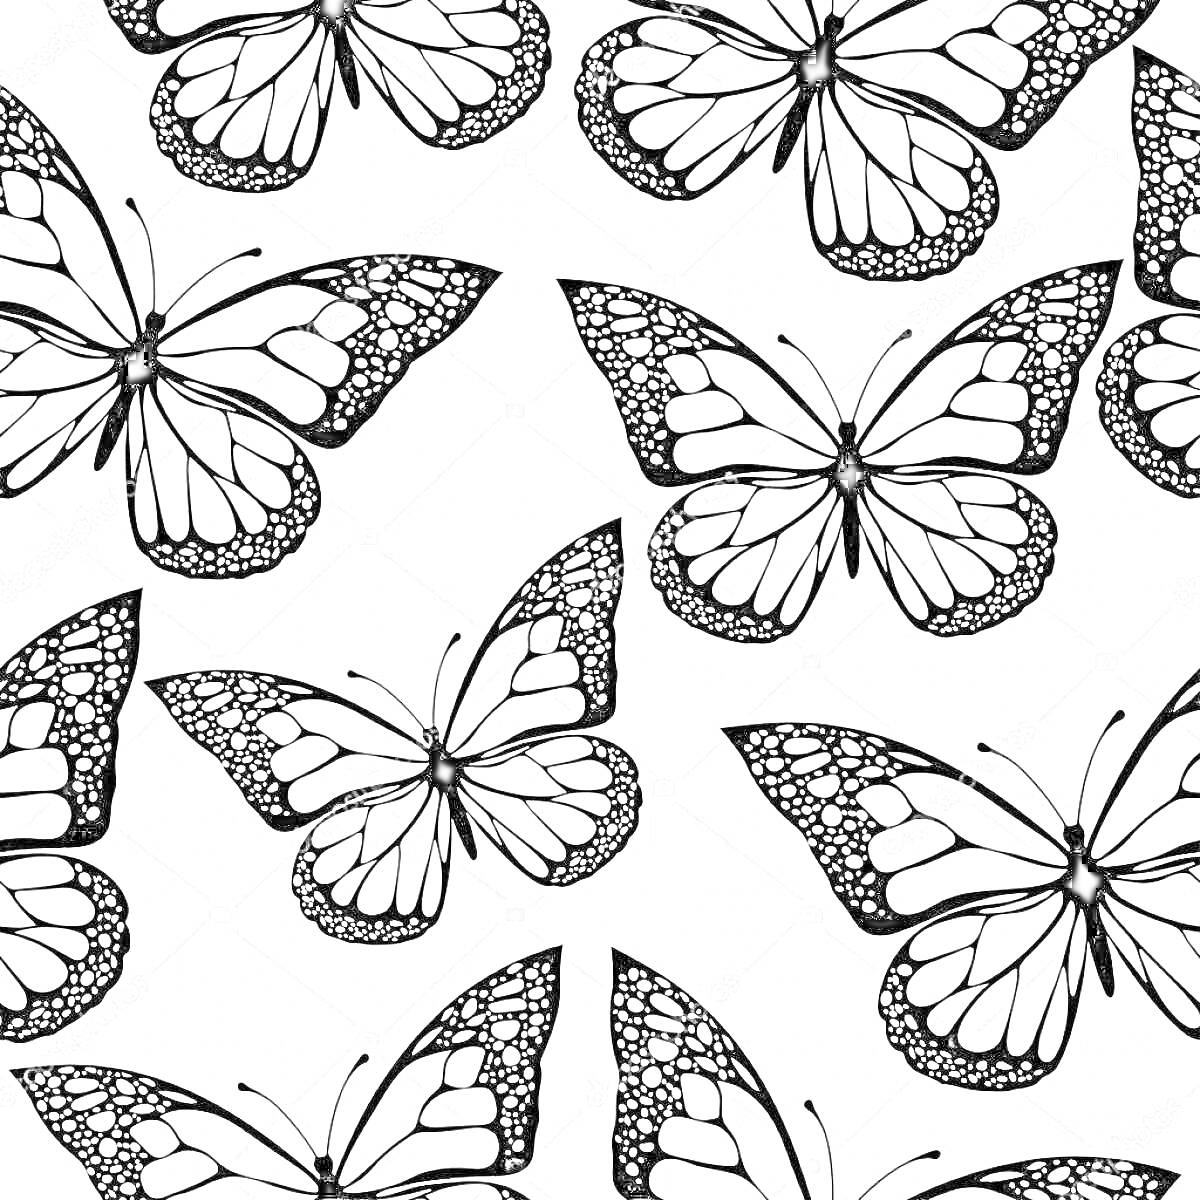 Раскраска Раскраска черно-белая с множеством бабочек